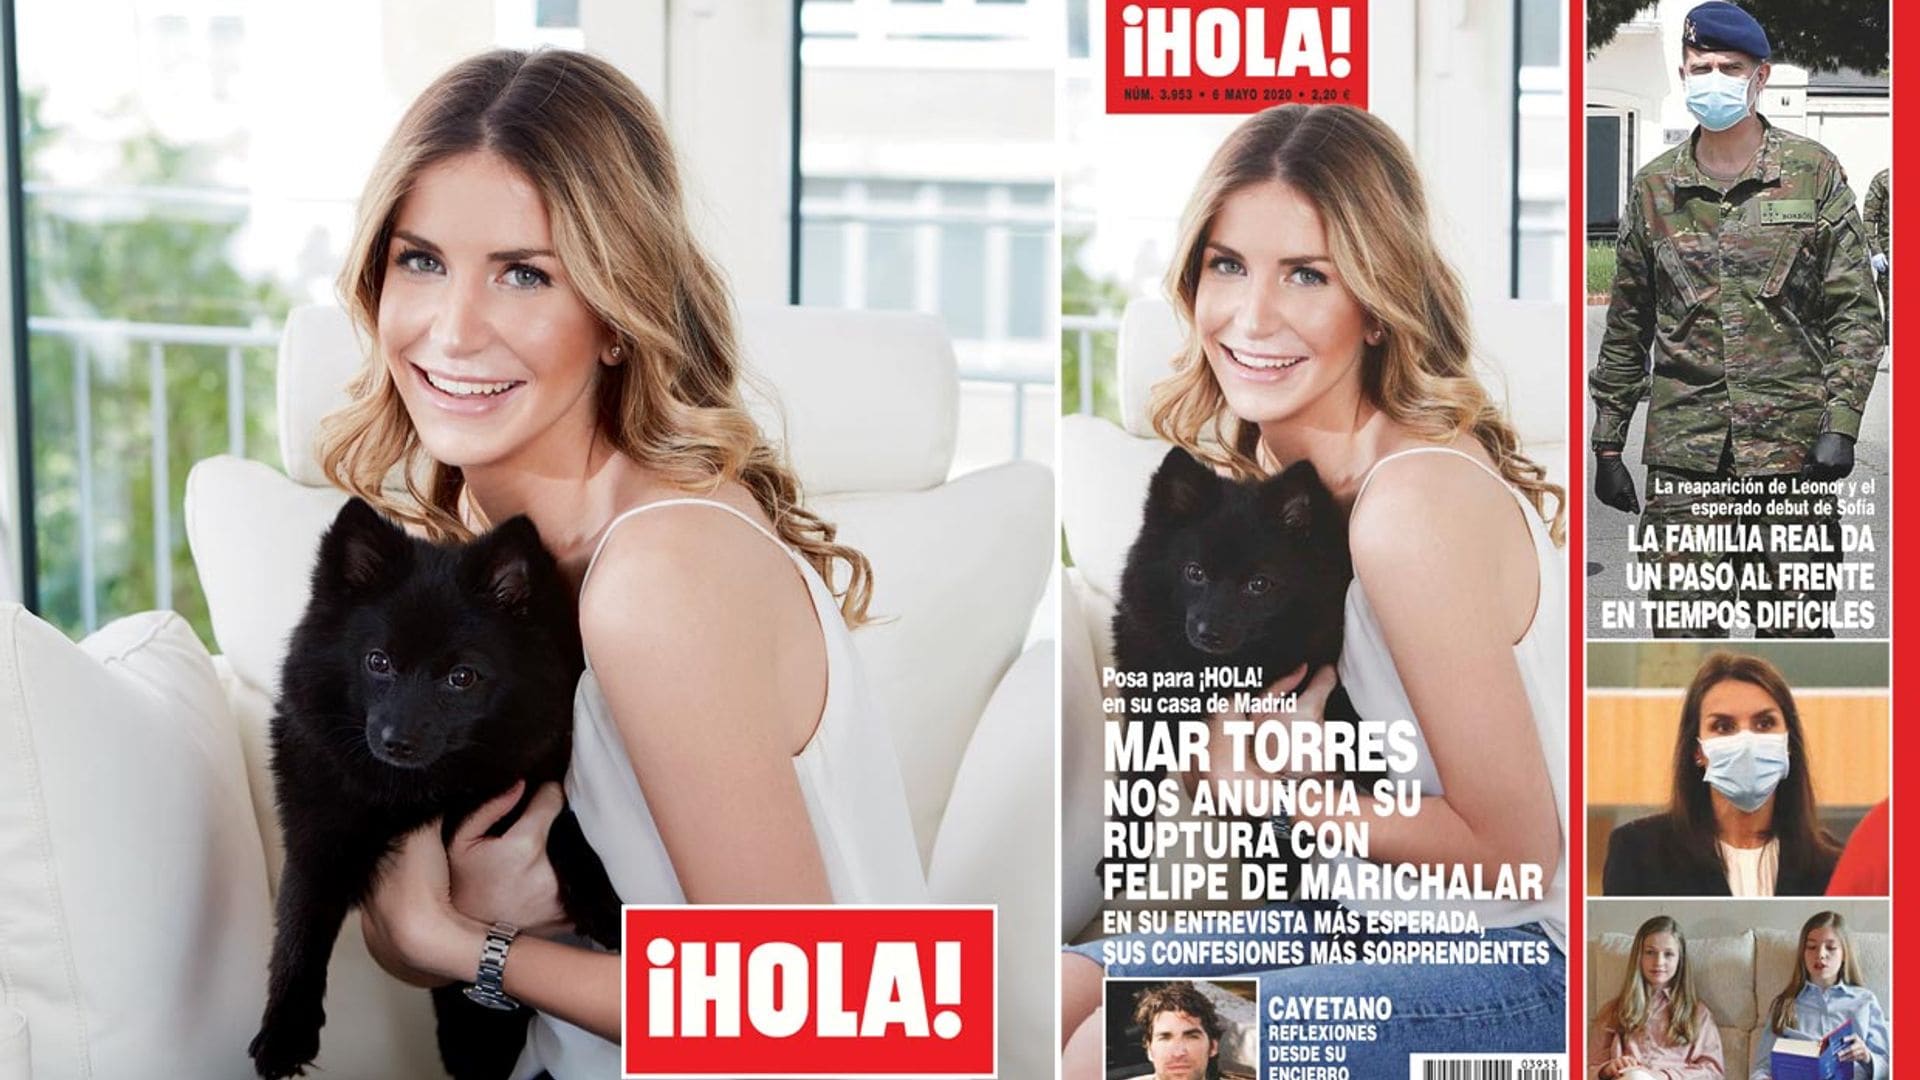 En ¡HOLA!, Mar Torres anuncia su ruptura con Felipe de Marichalar